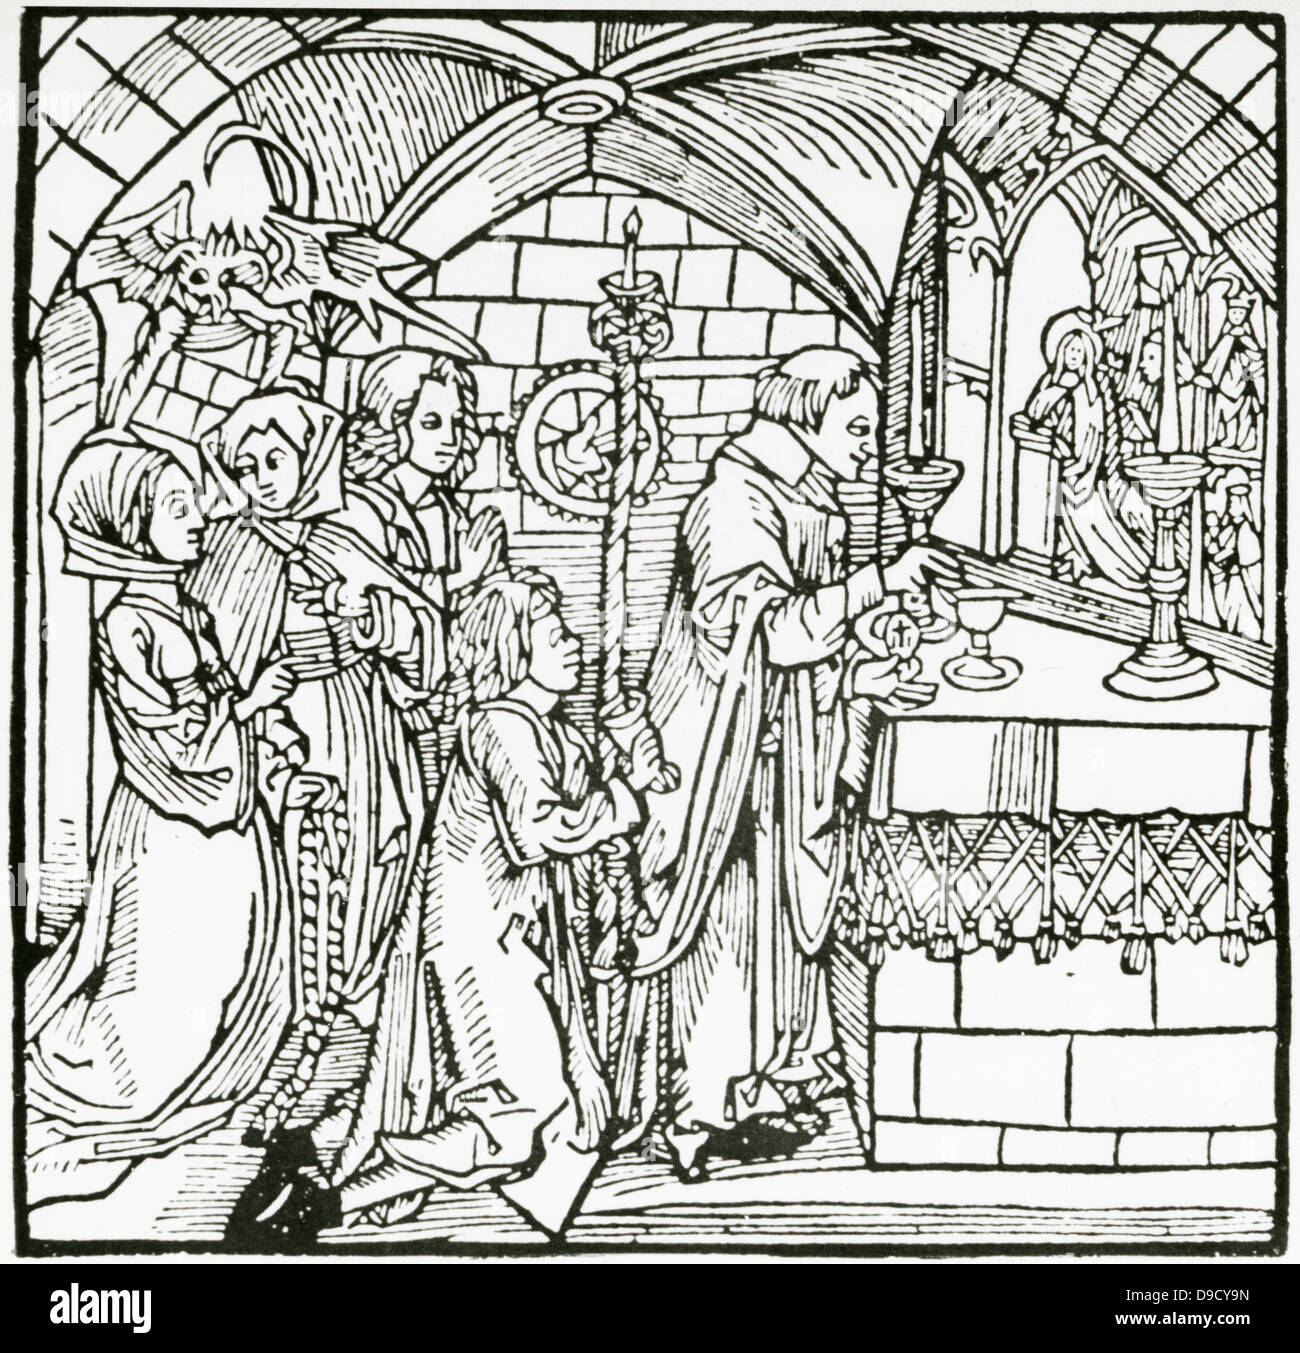 Les femmes sous l'influence du Diable broutement durant la messe. Gravure sur bois, Augsburg, 1498. Banque D'Images